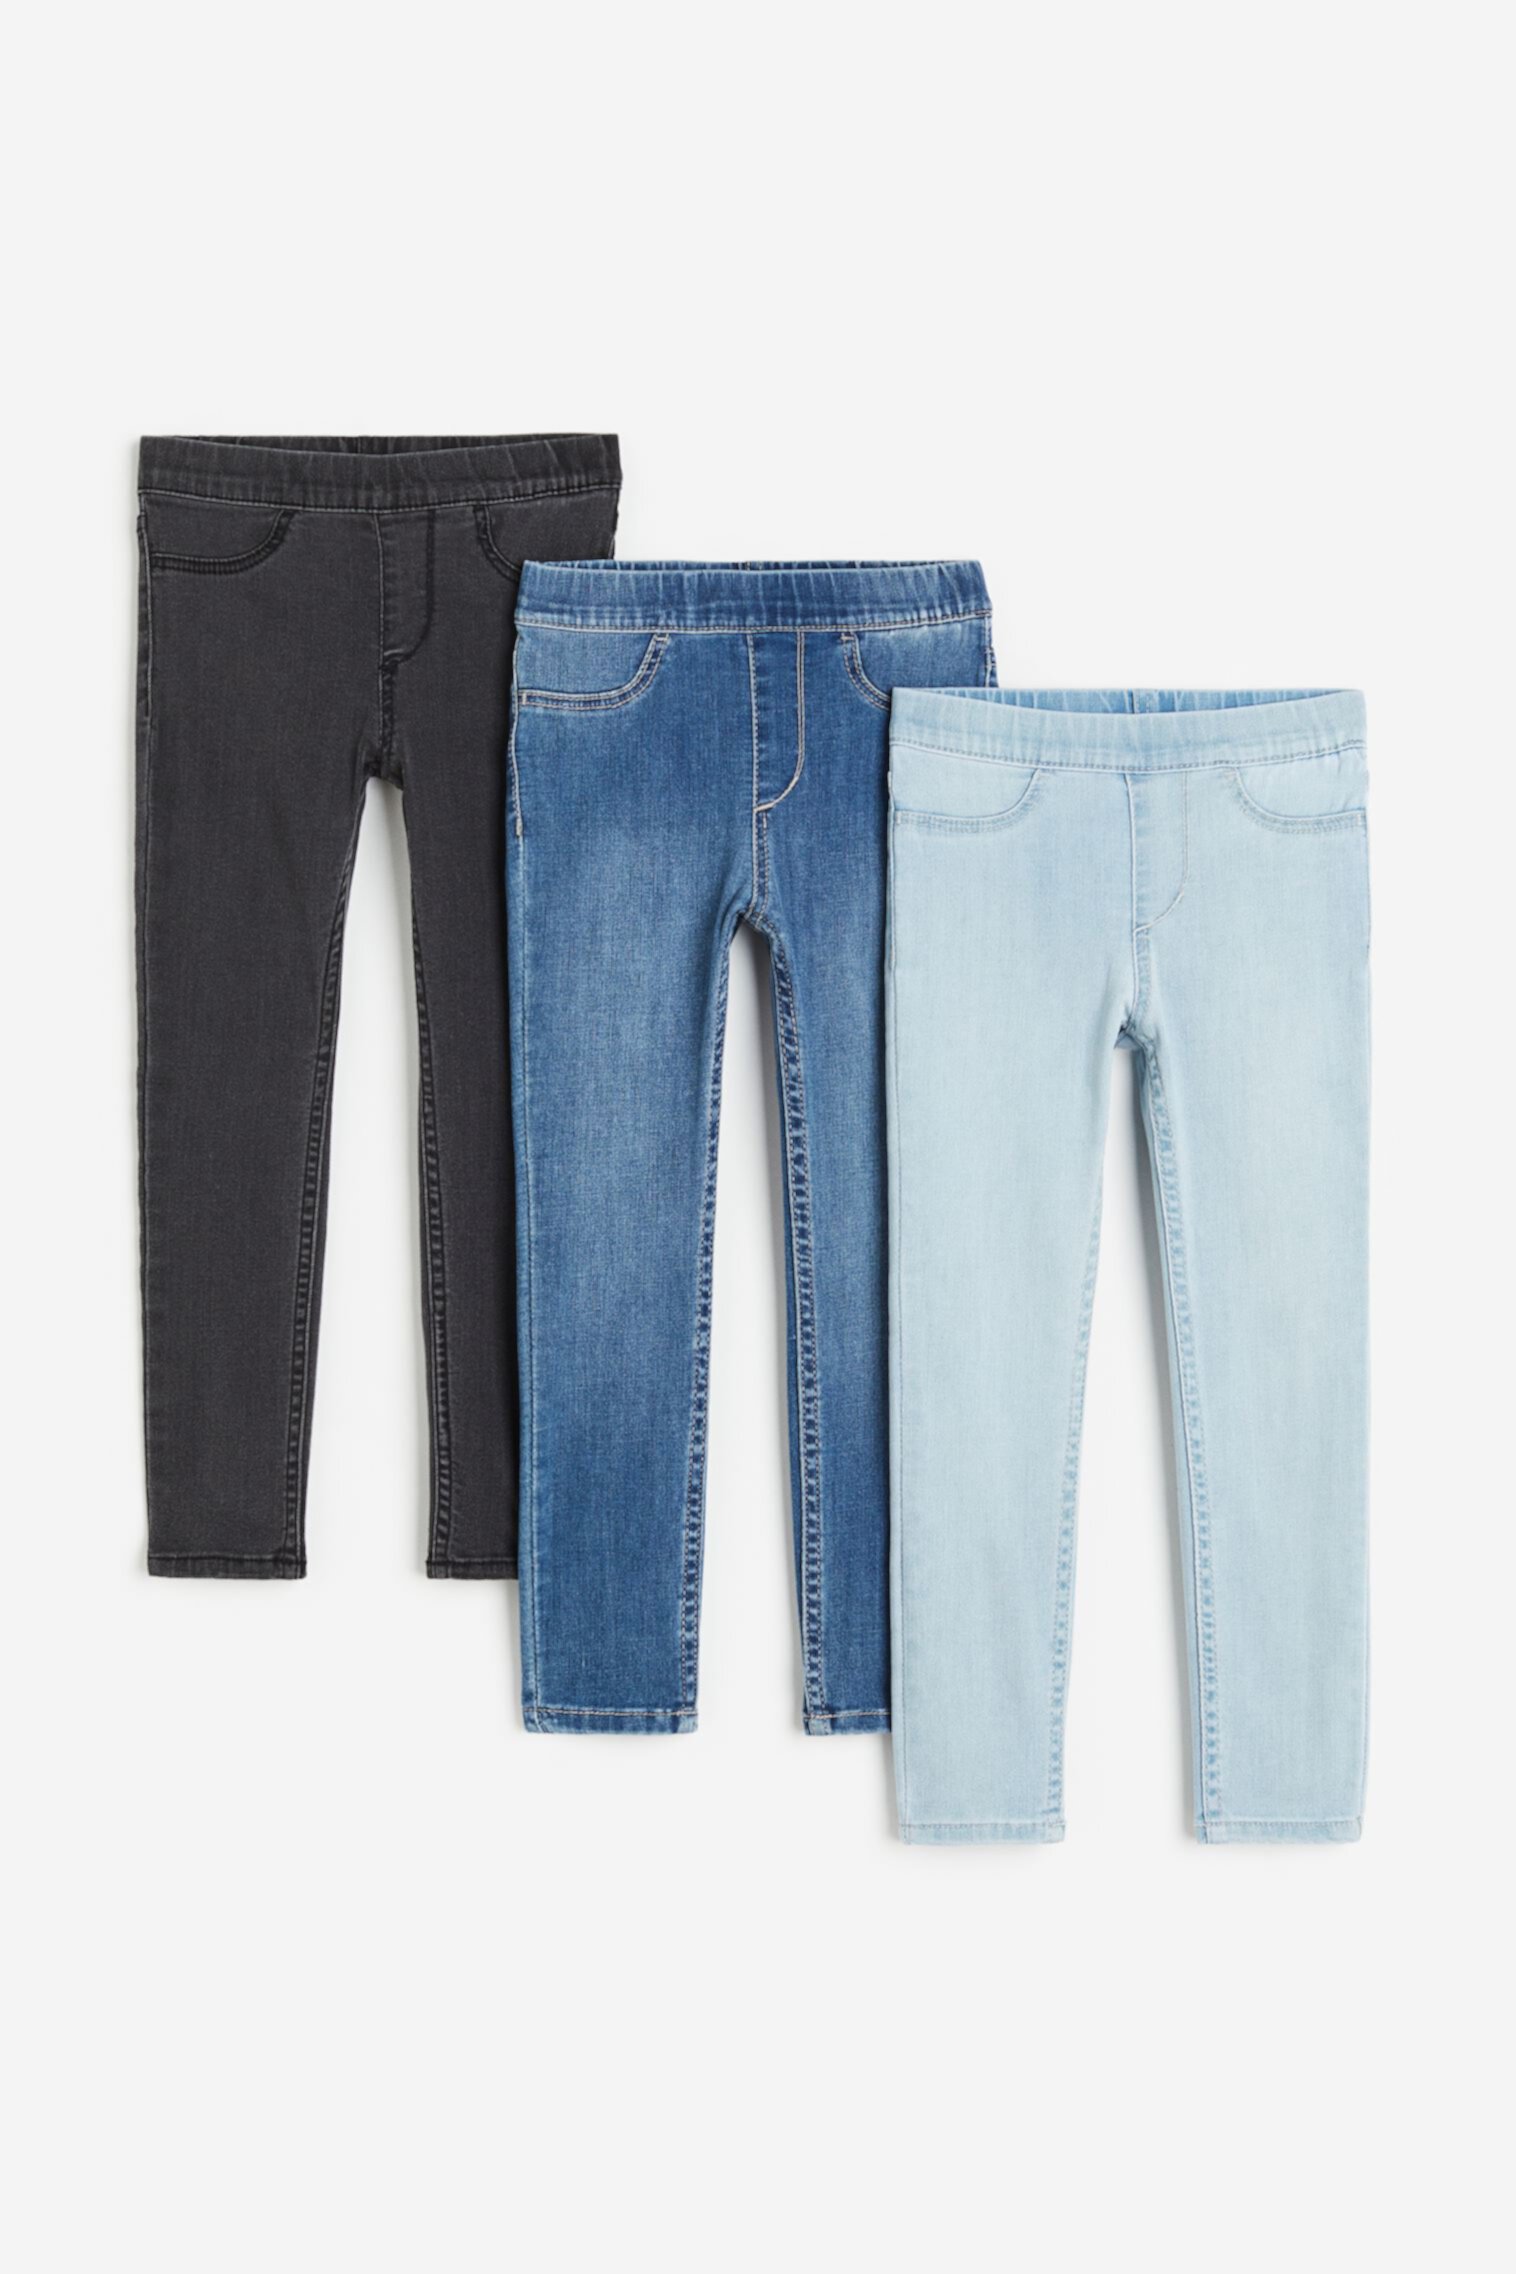 3 пары джинсовых джеггинсов H&M